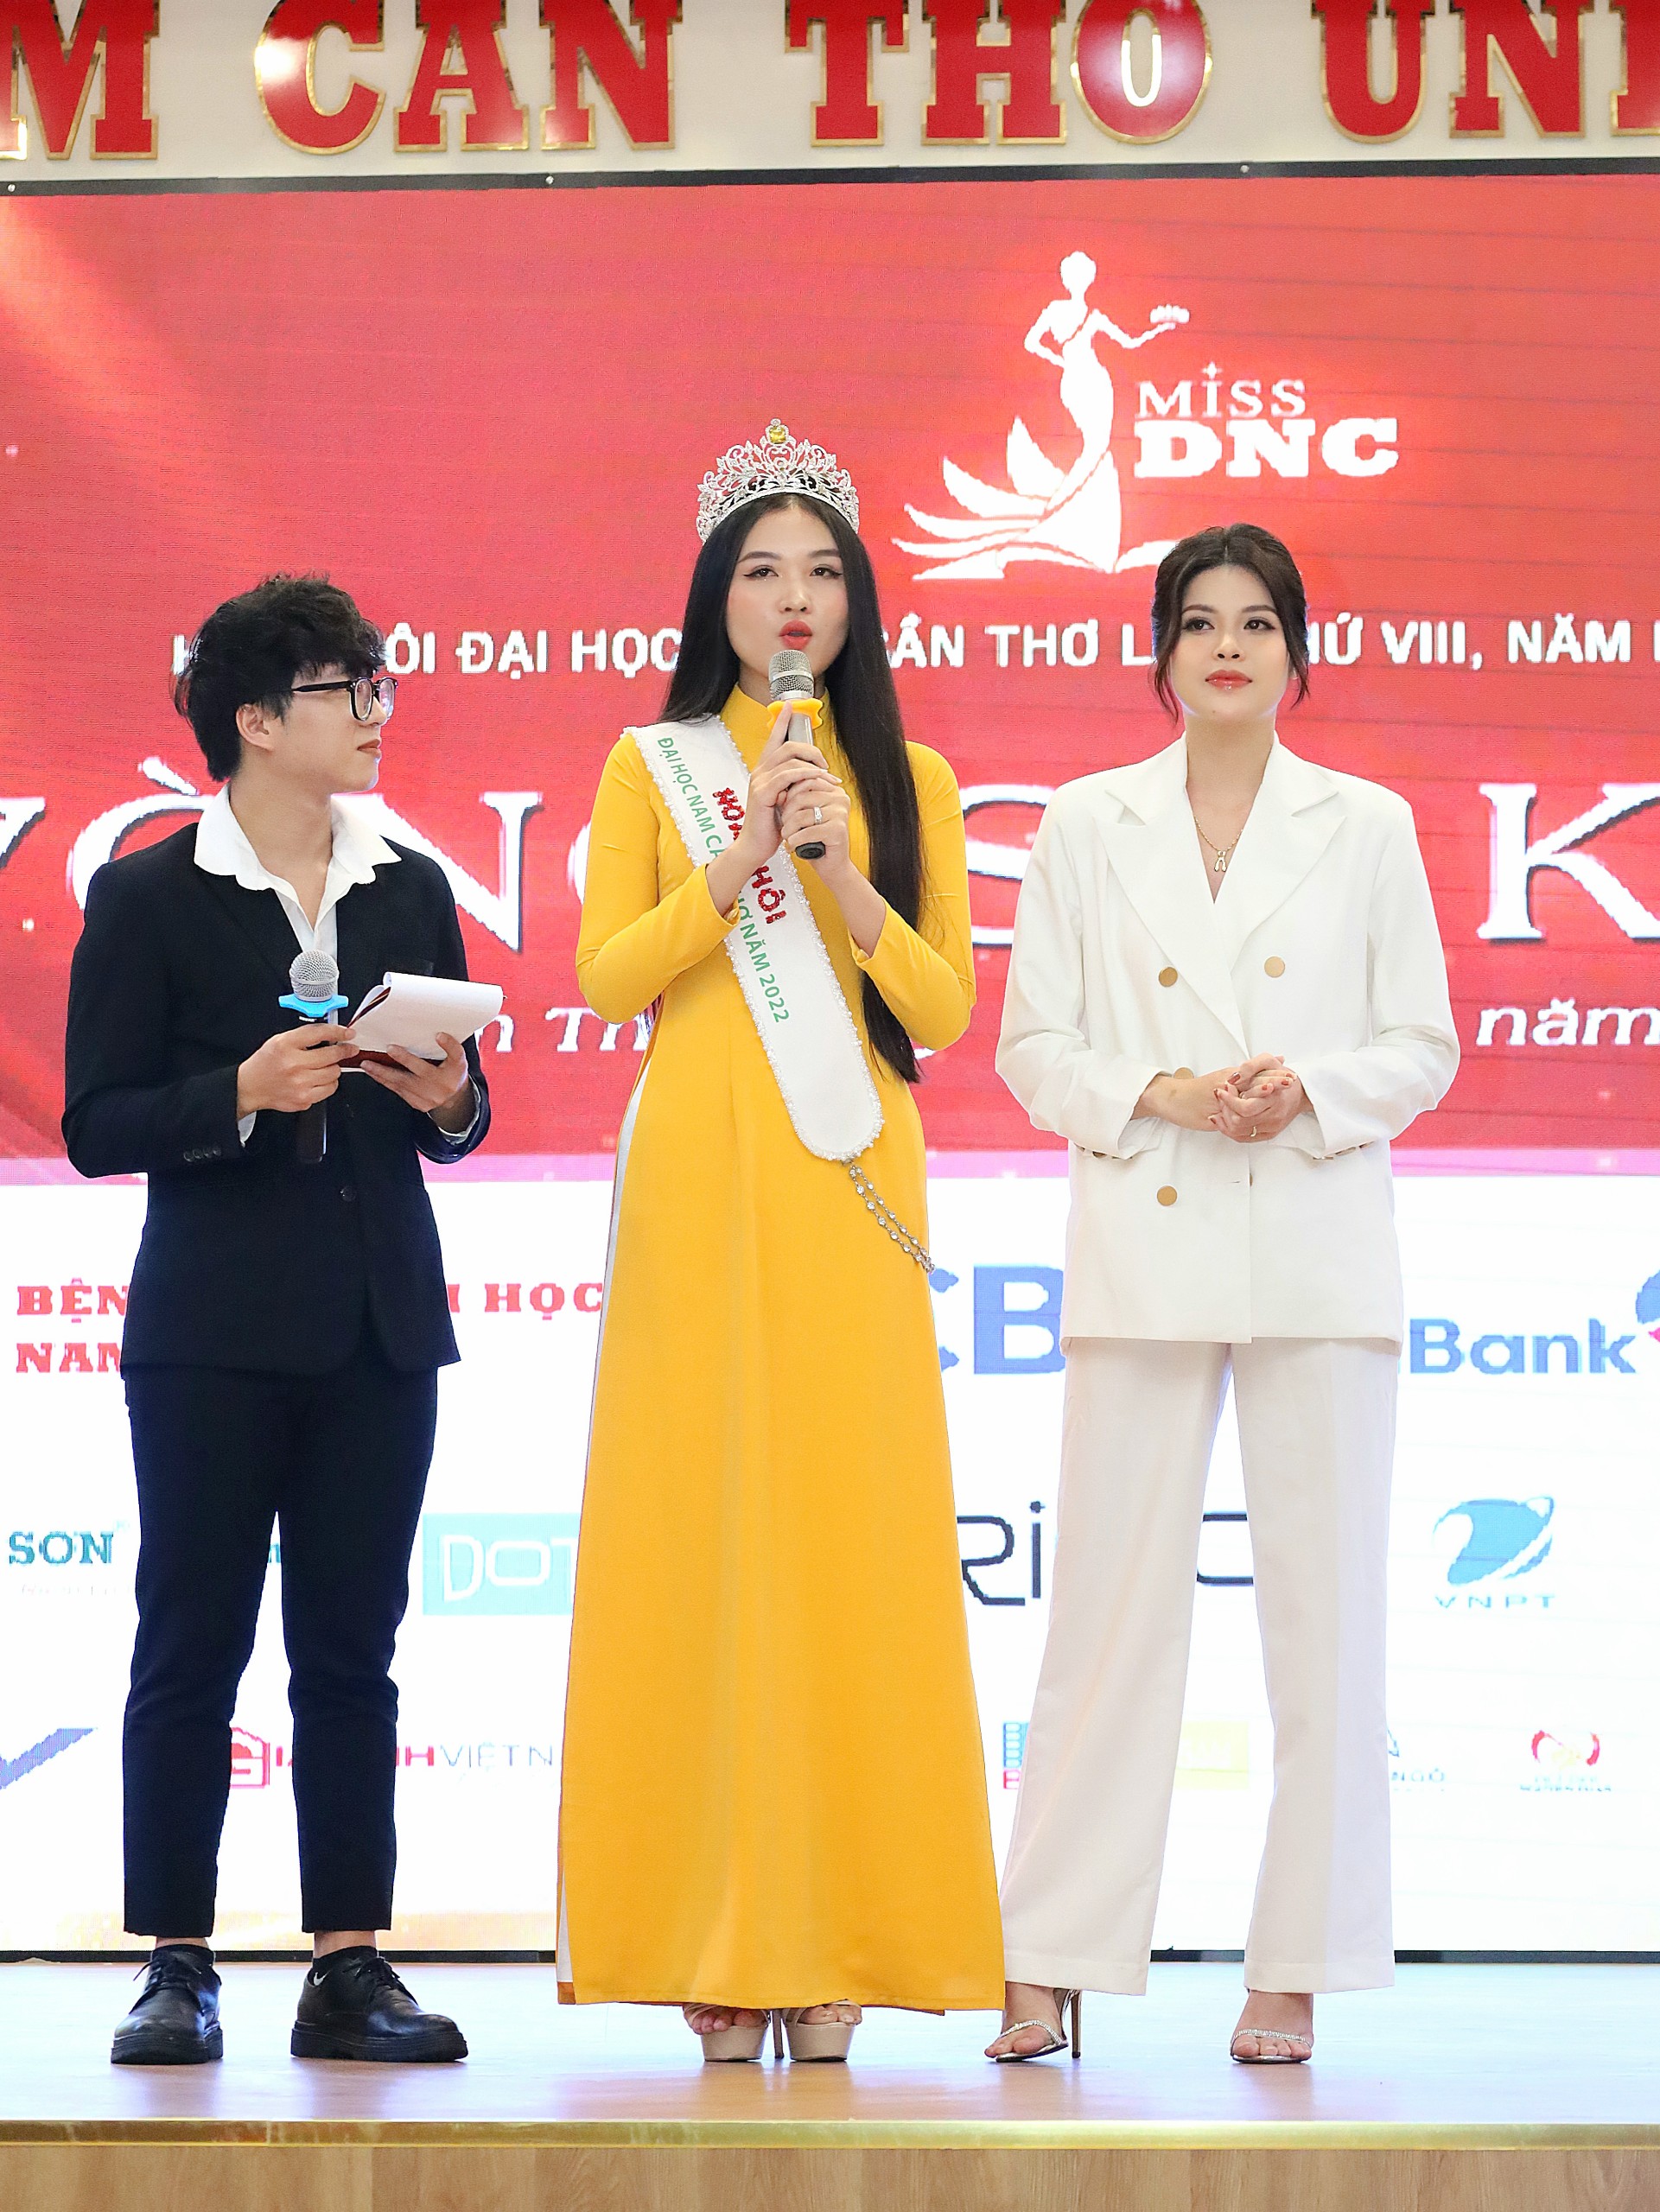 Miss Nguyễn Thị Thu Ngân - Hoa khôi Đại học Nam Cần Thơ năm 2022 và Miss Trần Khả Di - Á khôi 2 Hoa khôi Đại học Nam Cần Thơ năm 2022 giao lưu cùng các thí sinh.